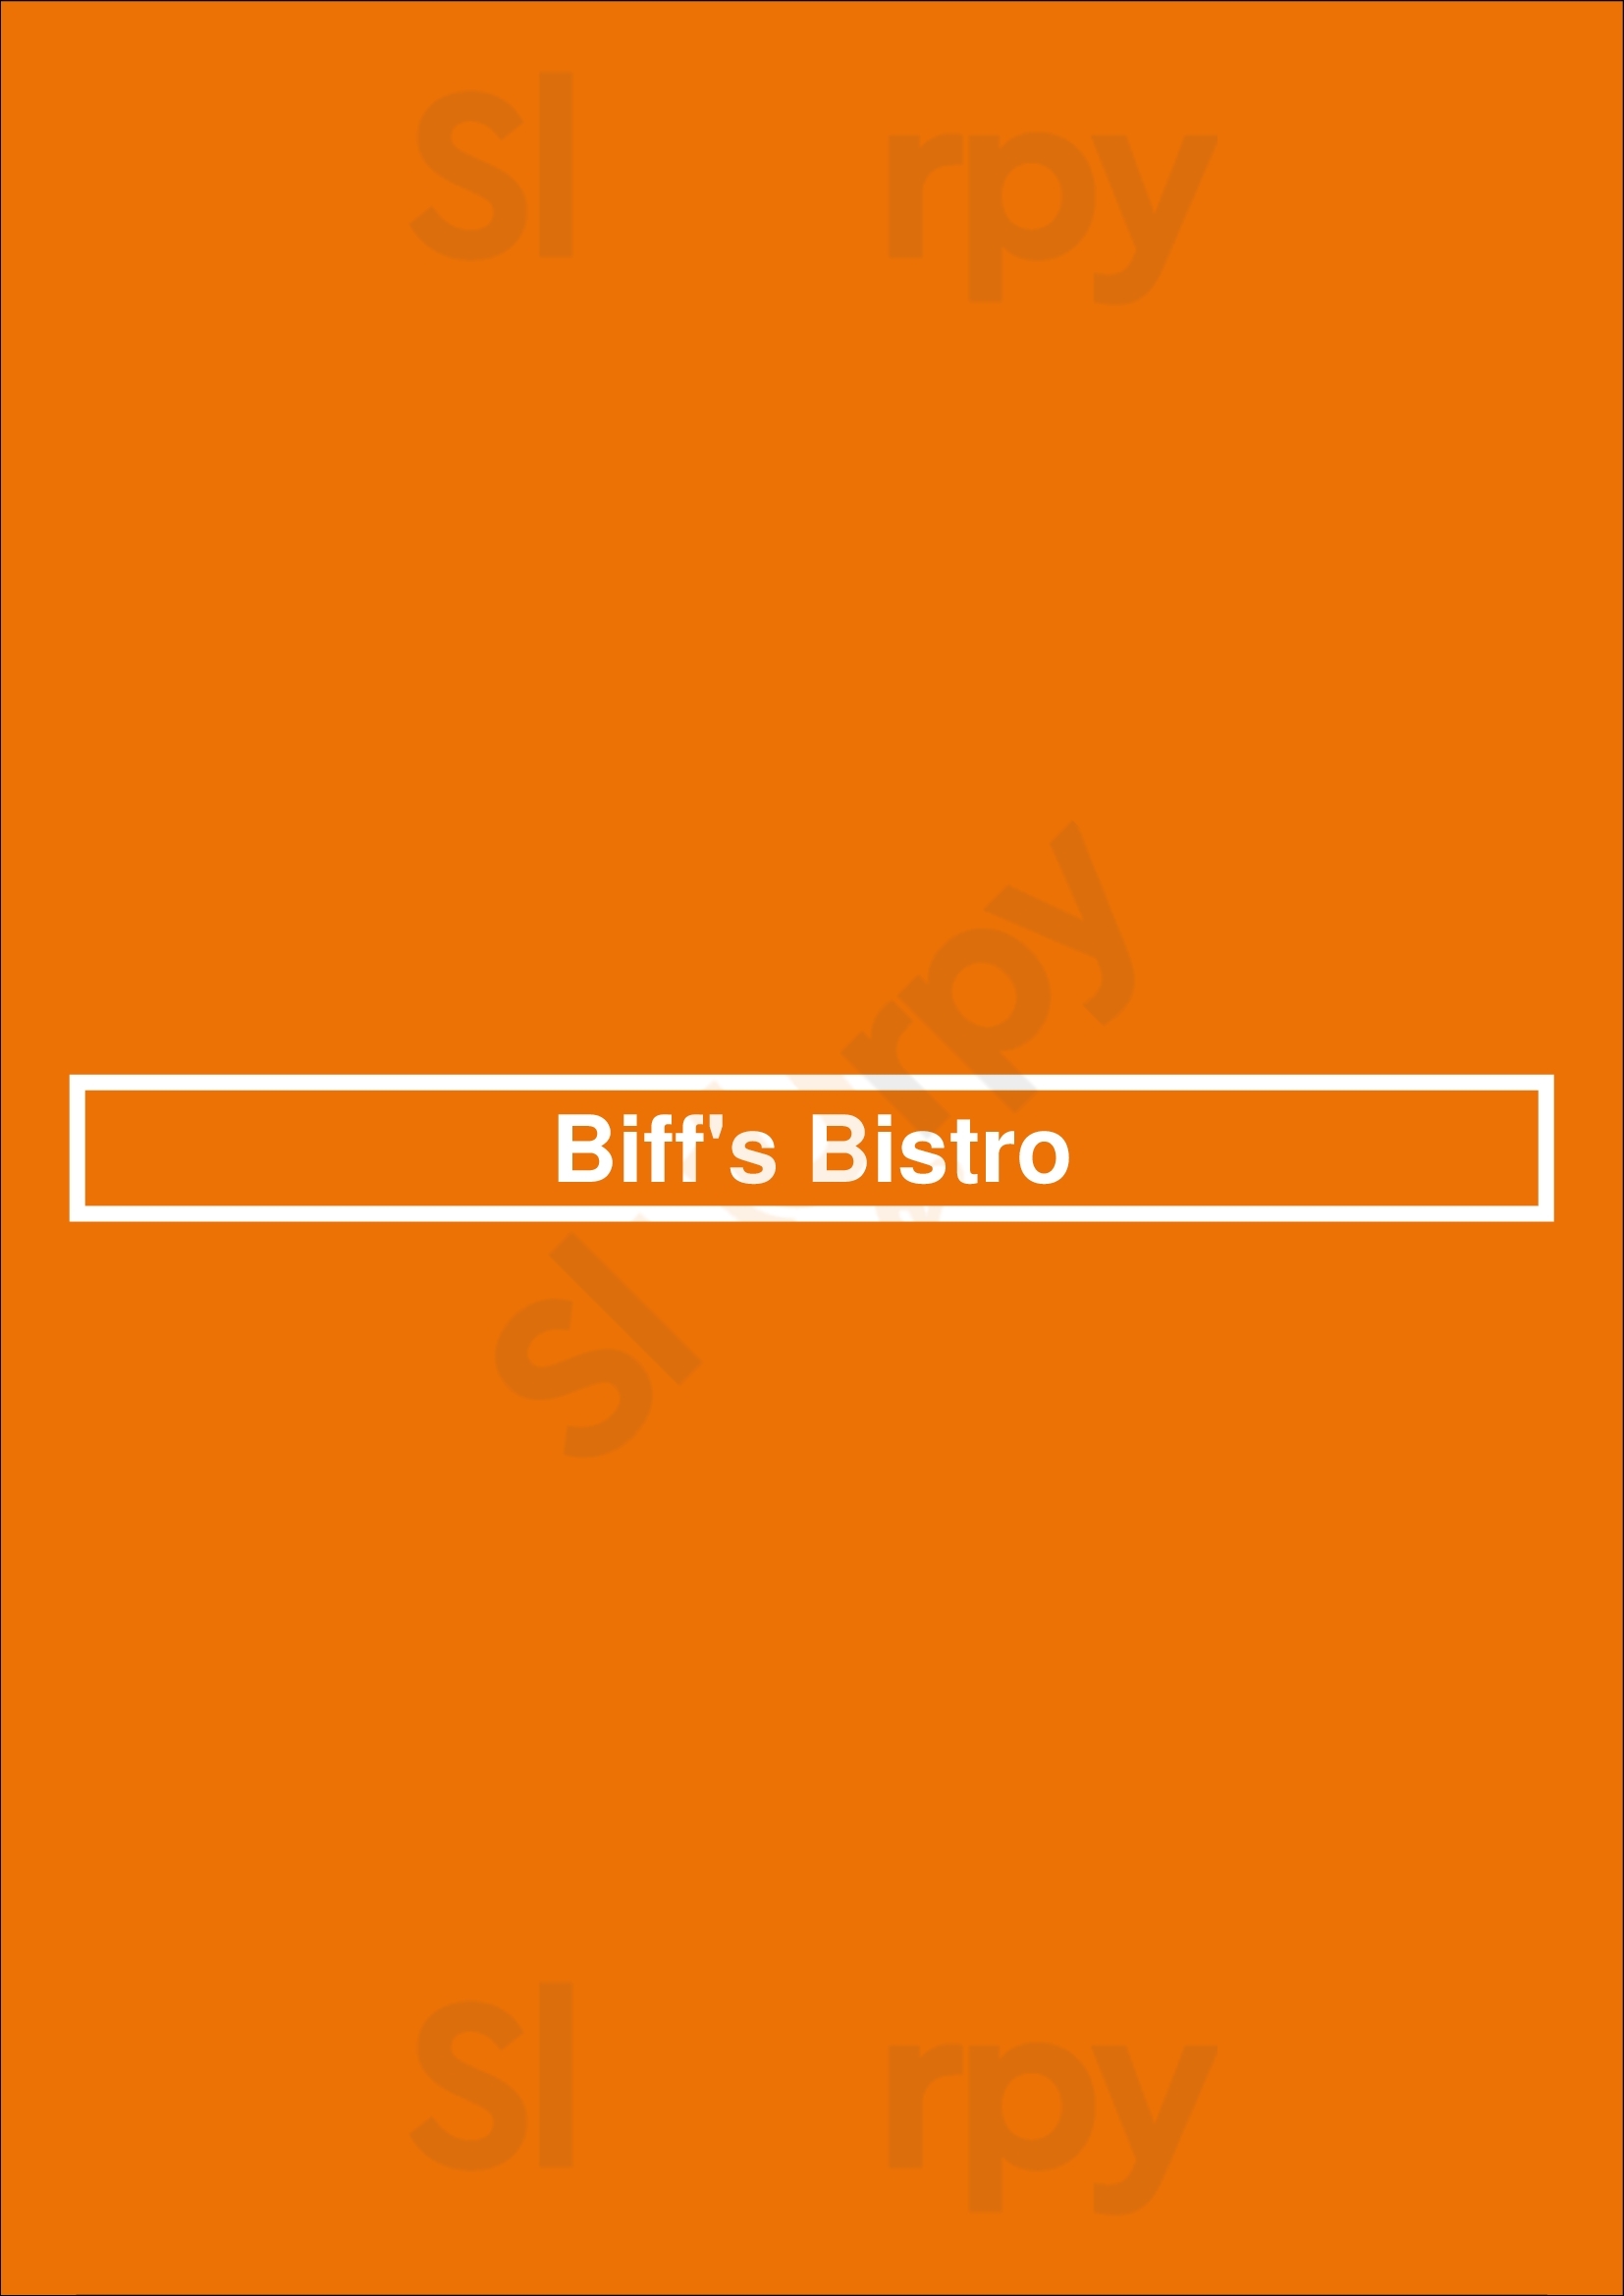 Biff's Bistro Toronto Menu - 1